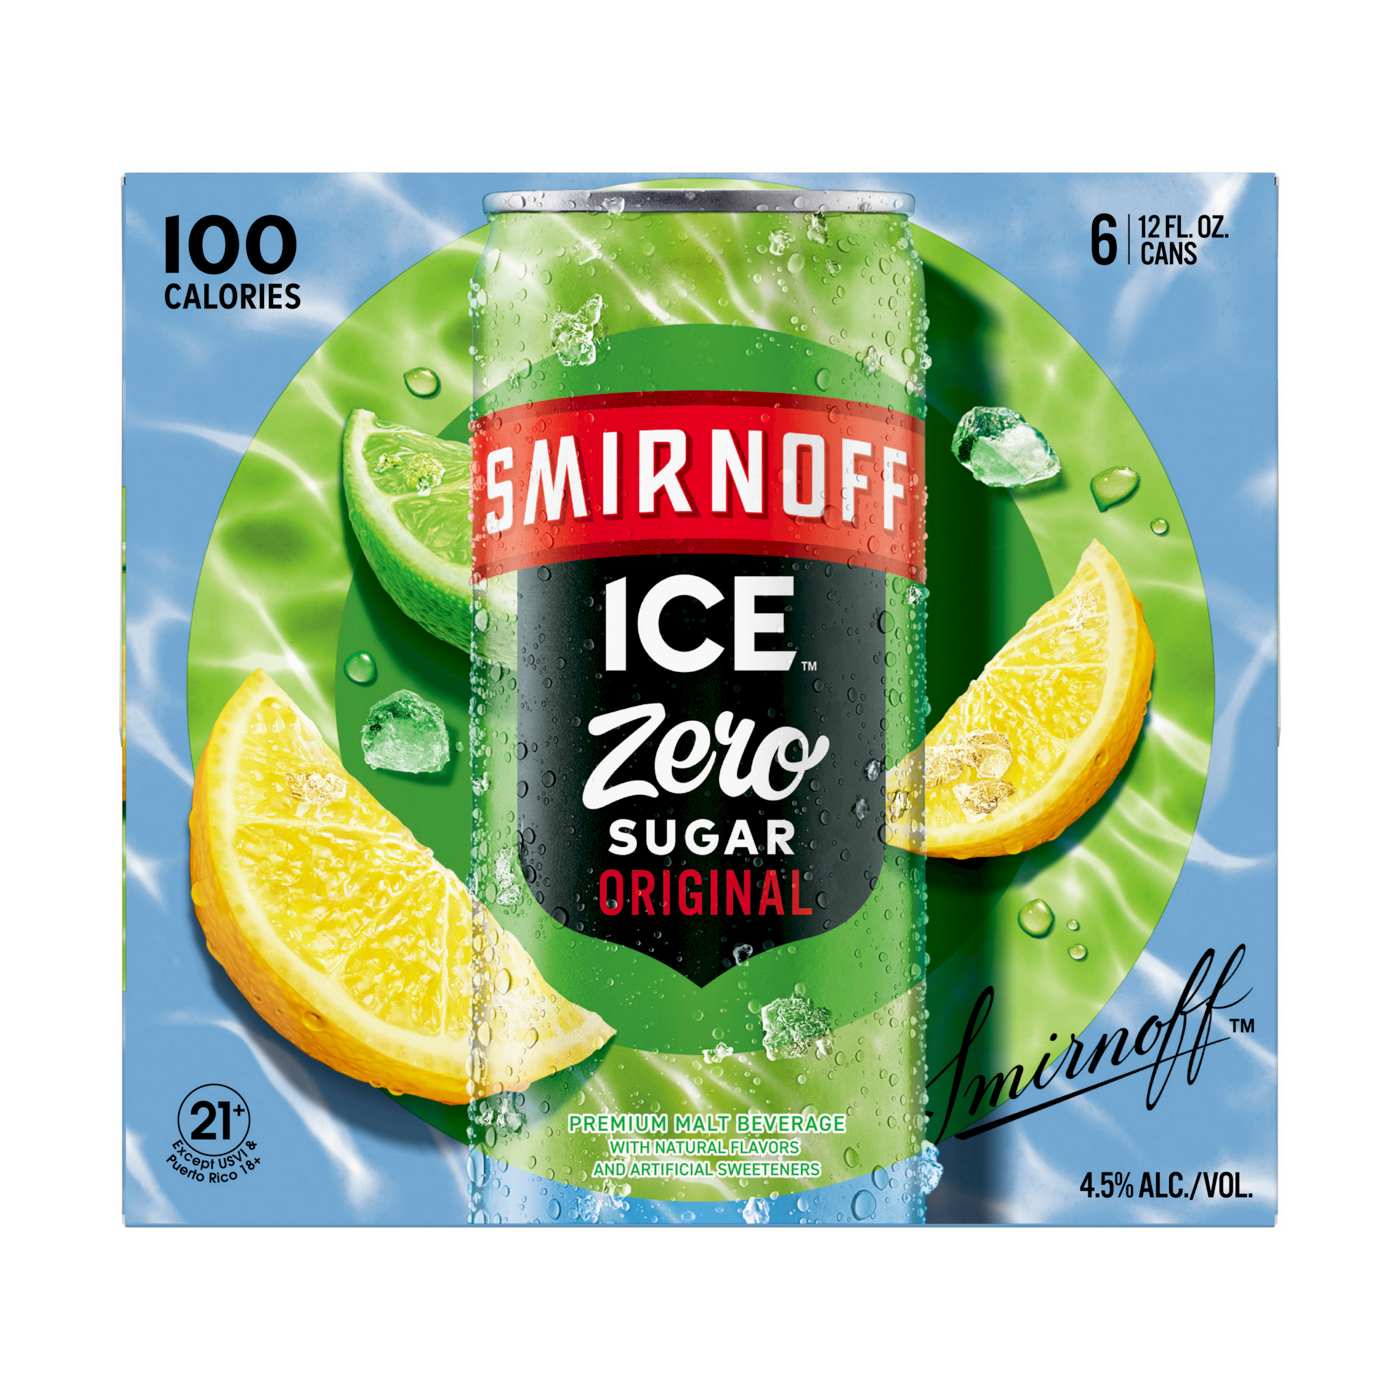 Smirnoff Ice Original Zero Sugar; image 3 of 3